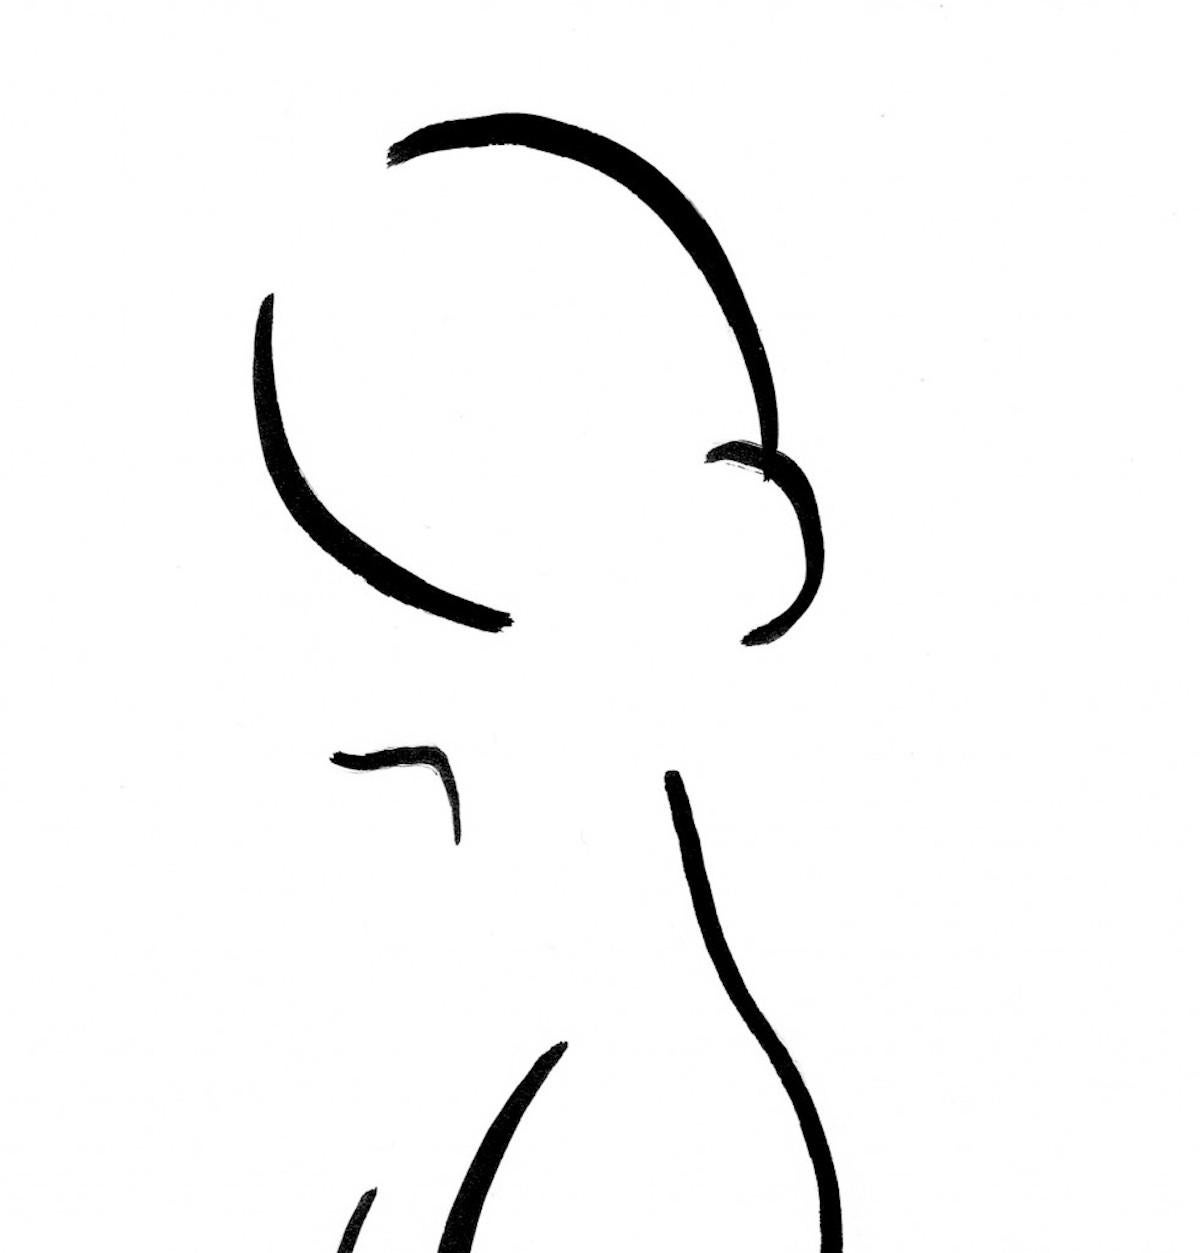 Dessin de nu de la série 7 No.9D est un dessin original de David Jones.
David Jones, artiste, a le plaisir de présenter une série de dessins de nus dans le style de Matisse. David utilise une technique connue sous le nom de dessin zen. Toutes les